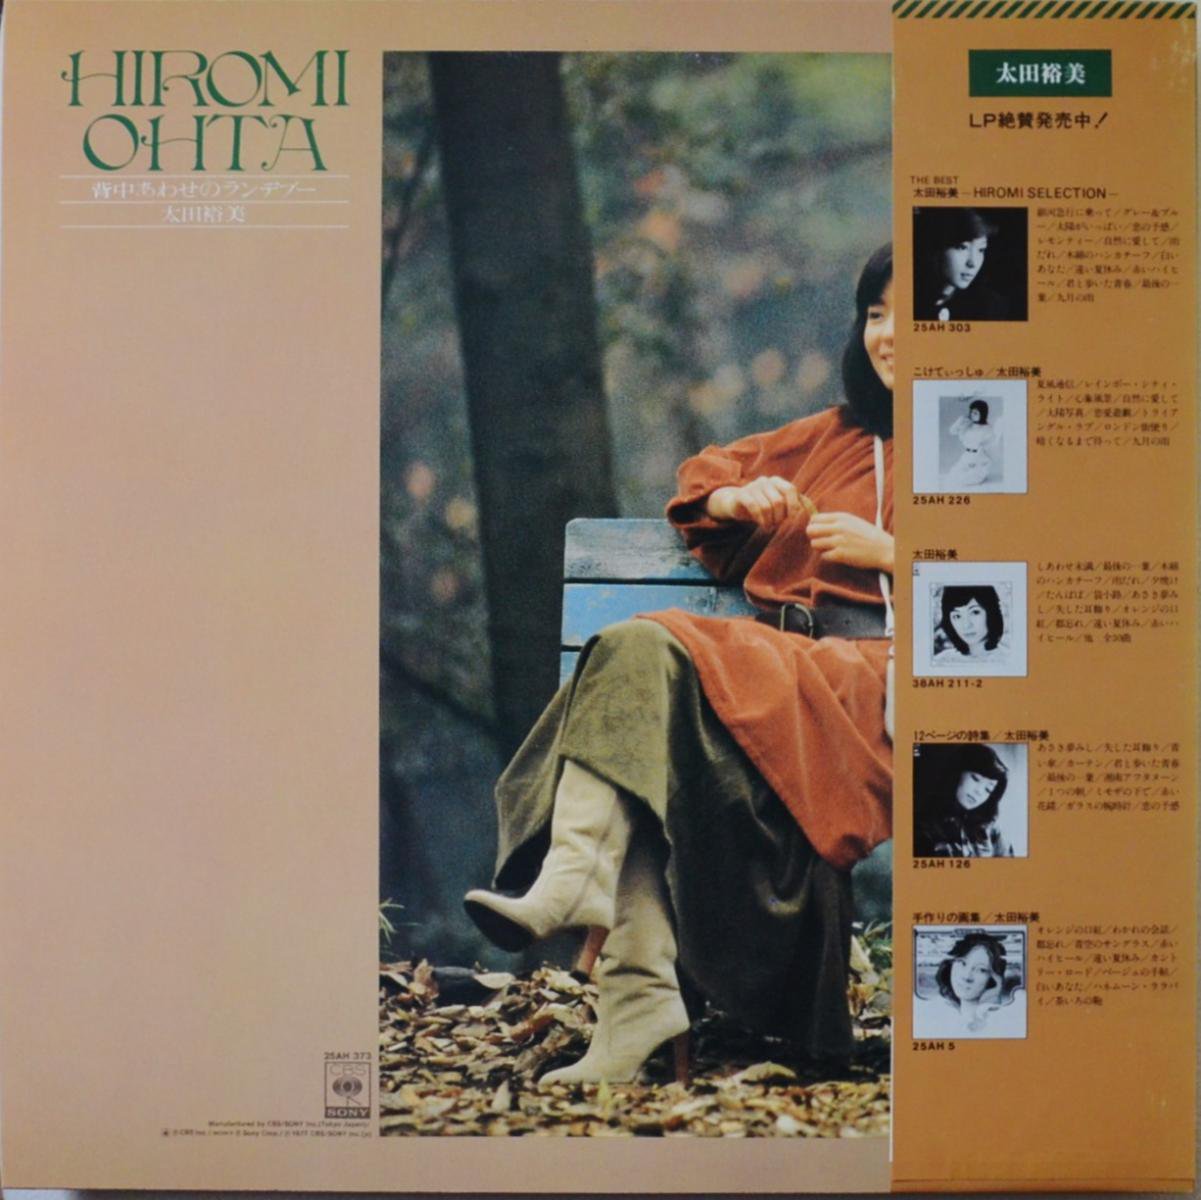 太田裕美 HIROMI OHTA / 背中あわせのランデブー (LP) - HIP TANK RECORDS